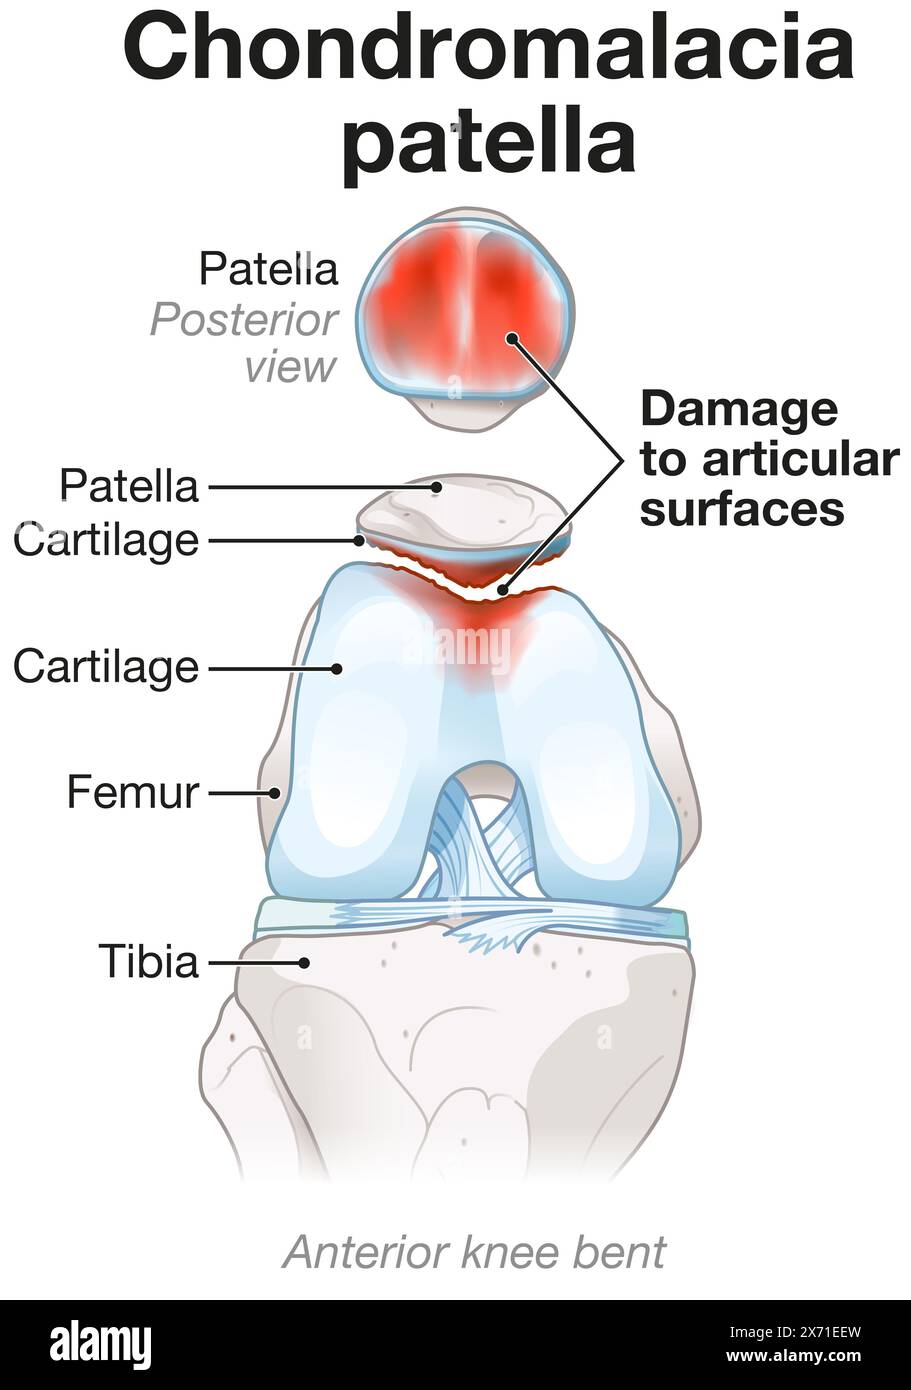 La condromalacia comporta l'ammorbidimento e il deterioramento della cartilagine, causando spesso dolore al ginocchio, infiammazione e disagio durante il movimento e l'attività Foto Stock